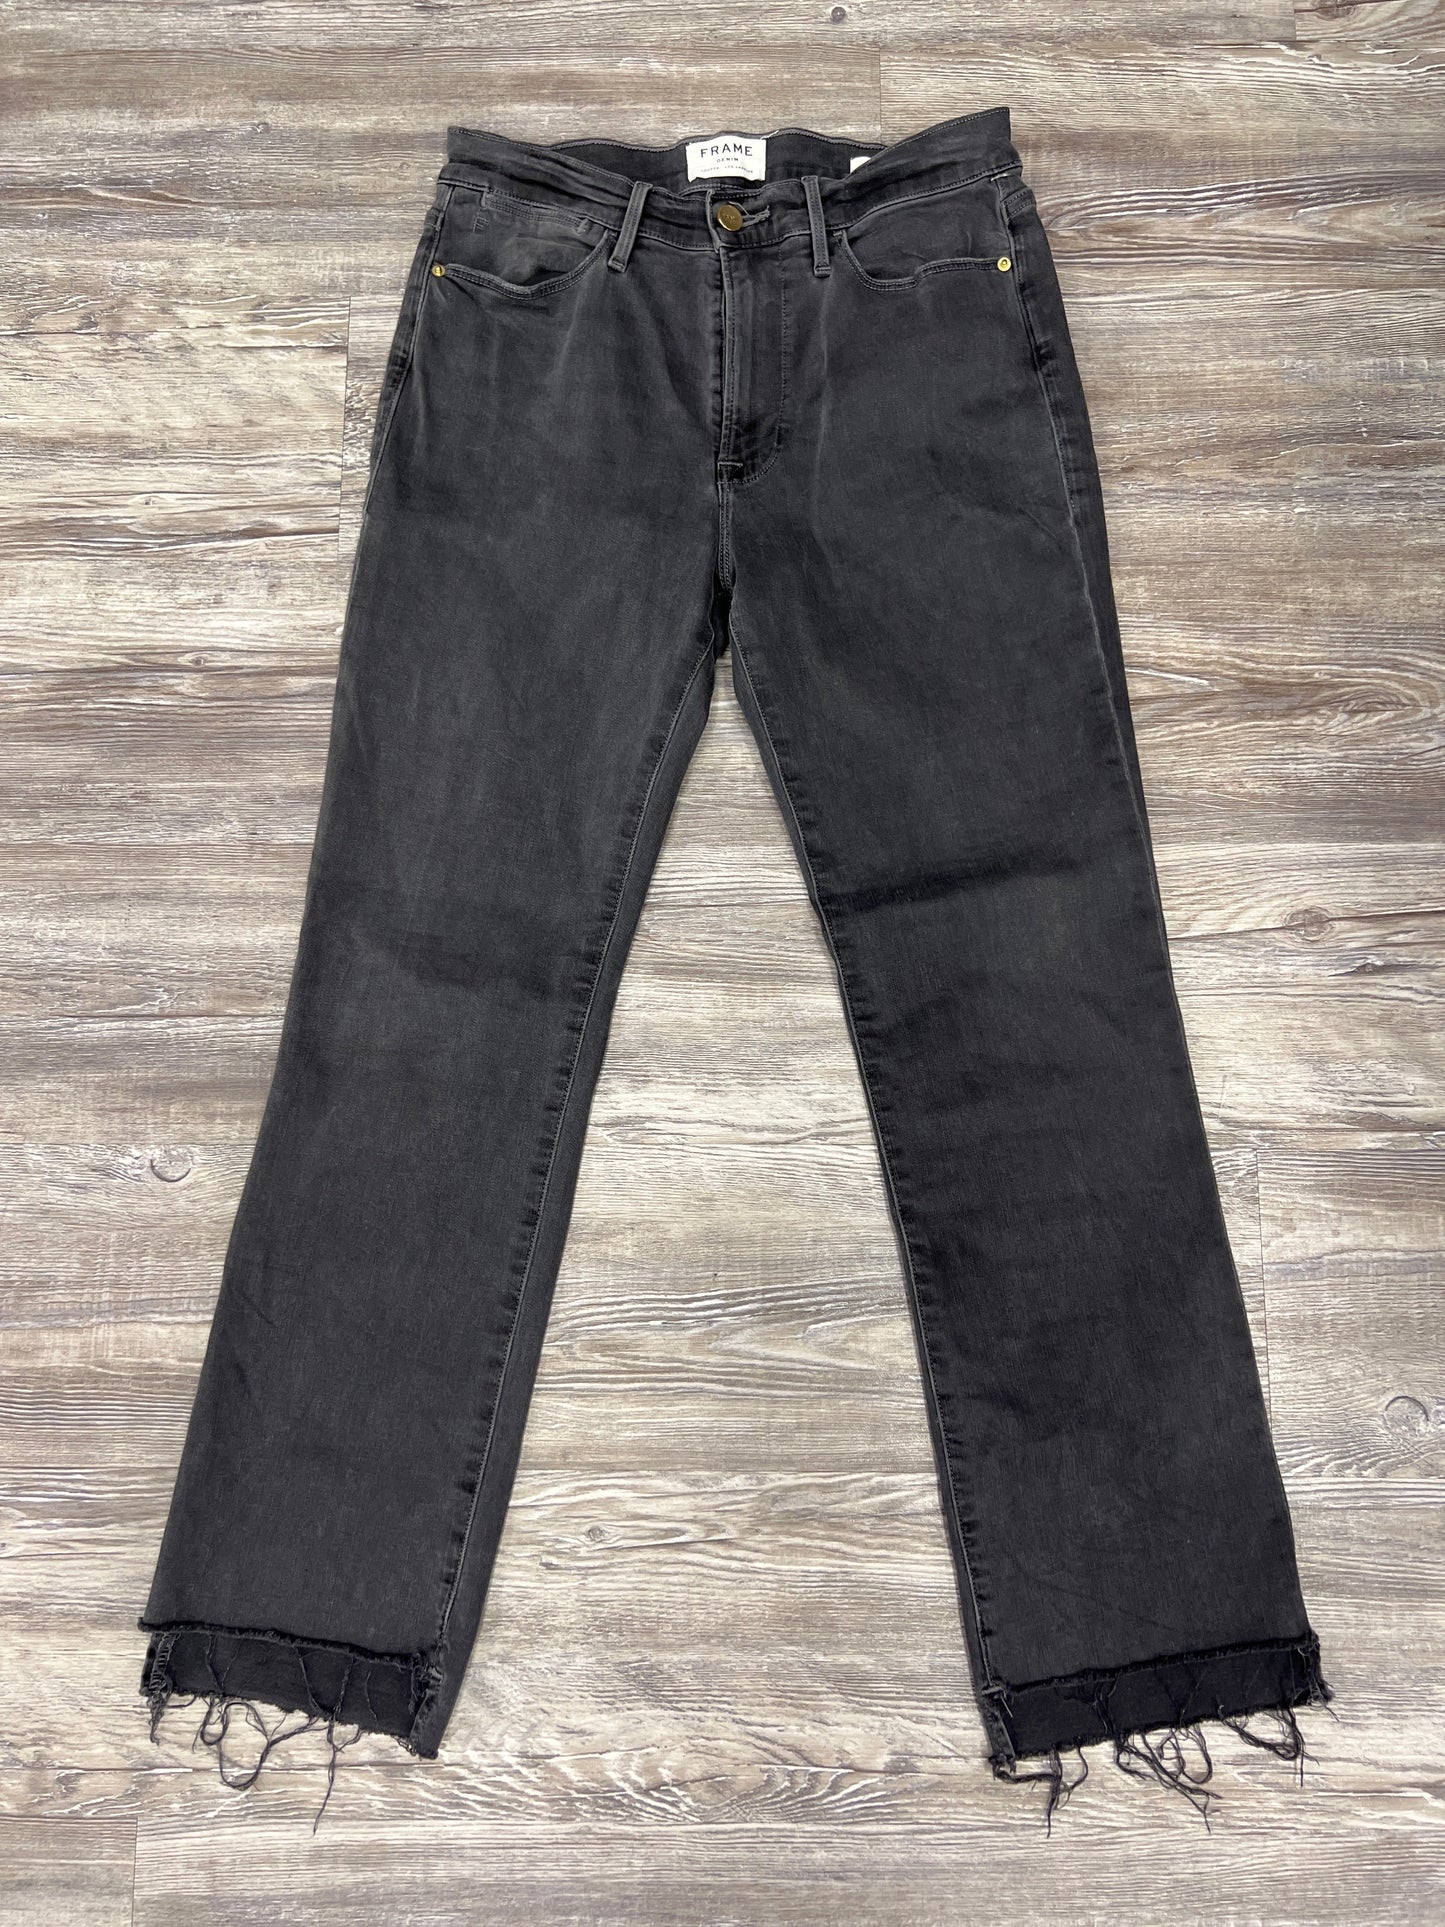 Black Denim Jeans Designer Frame, Size 10